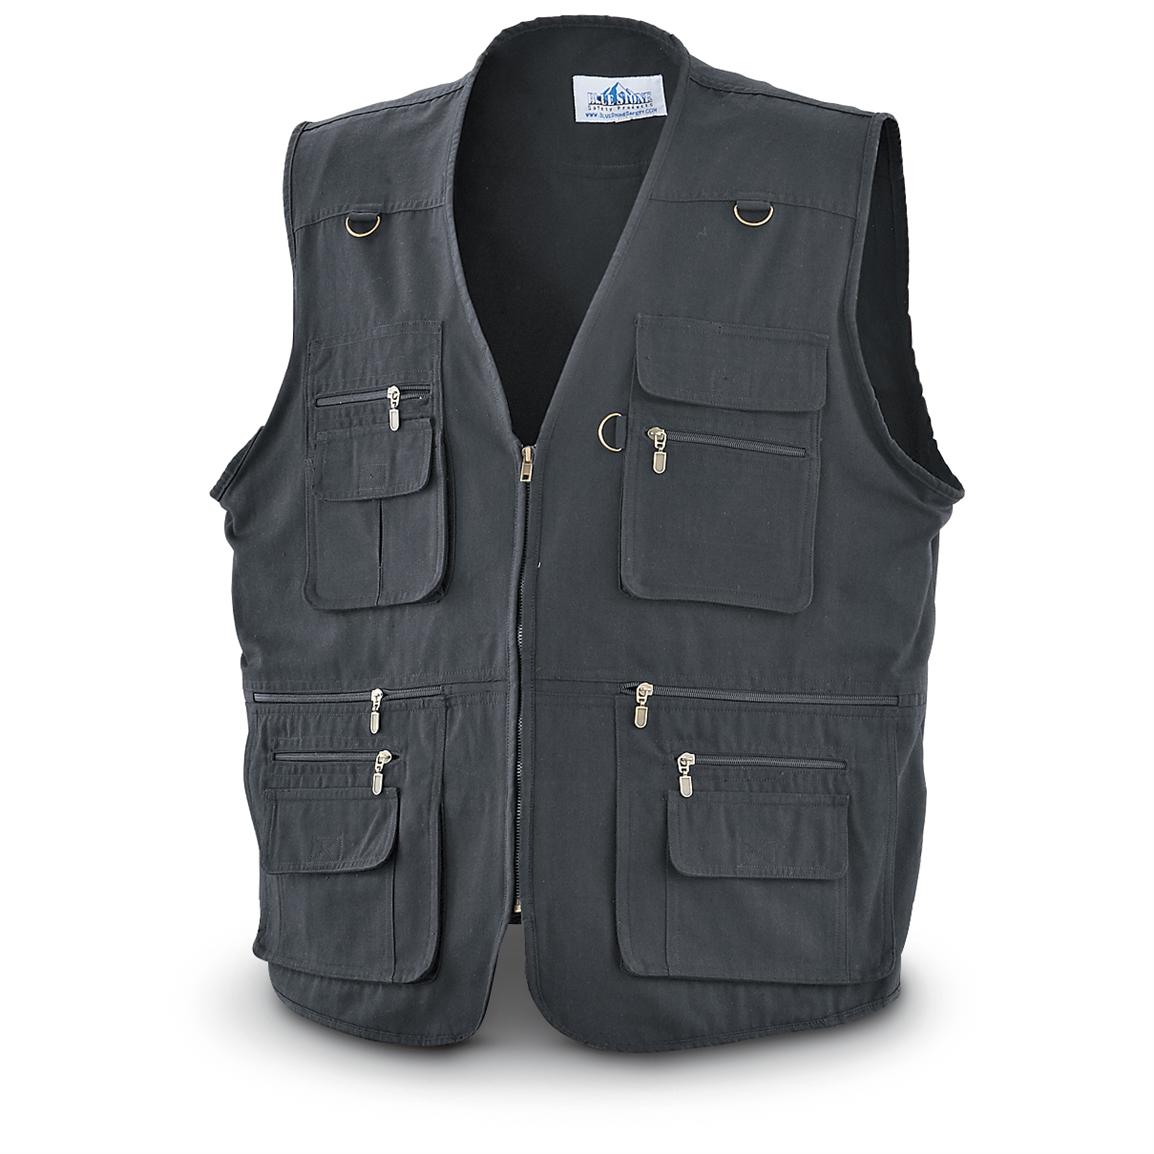 Concealment Vest, Black - 188825, Holsters at Sportsman's Guide